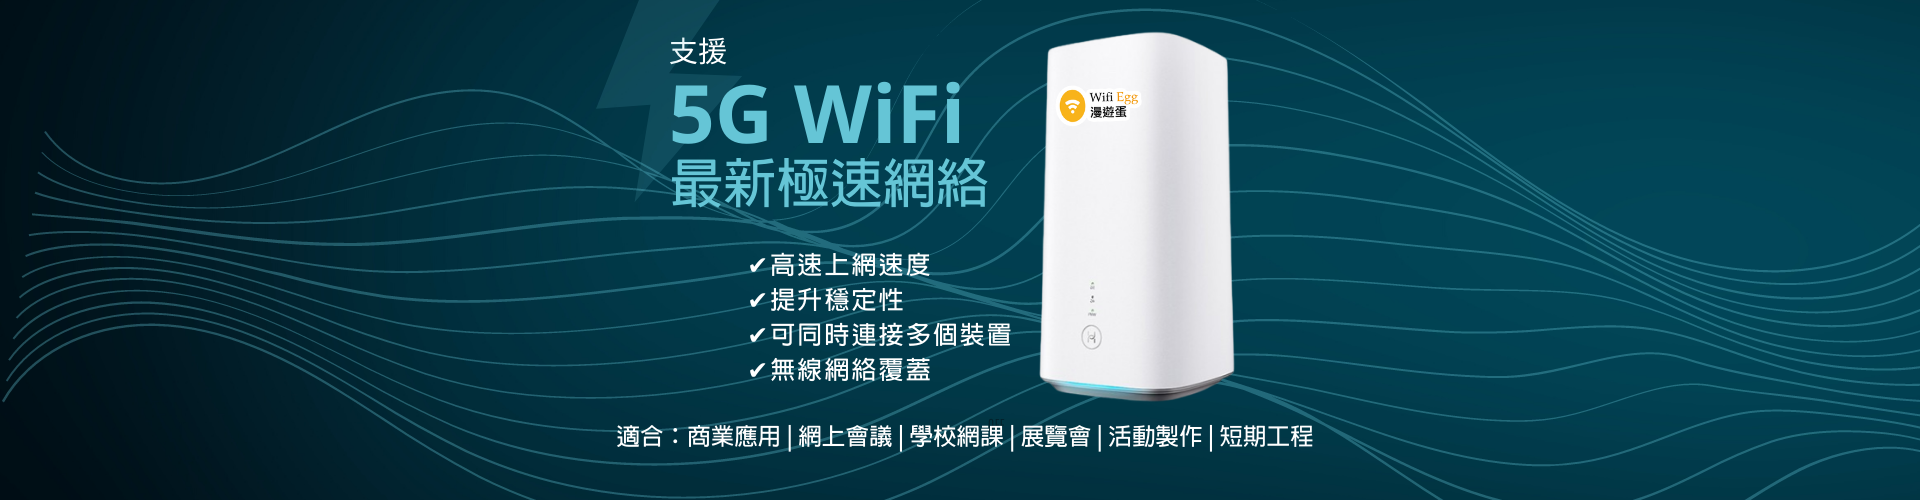 02. 5G HK WiFi